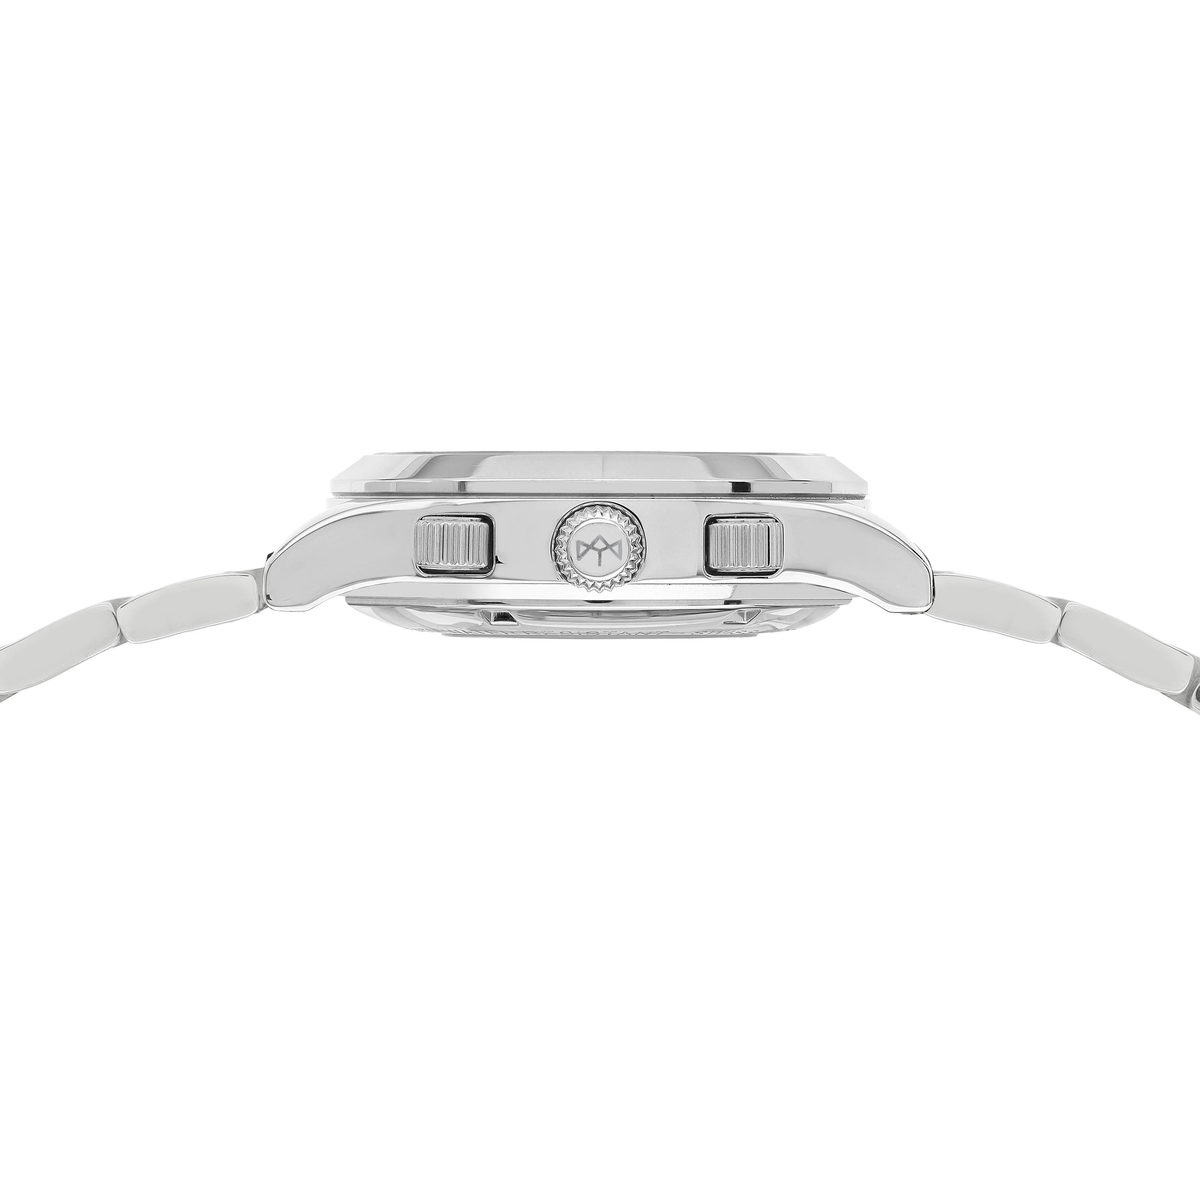 Montre MATY GM automatique chronographe cadran gris bracelet acier - vue 2